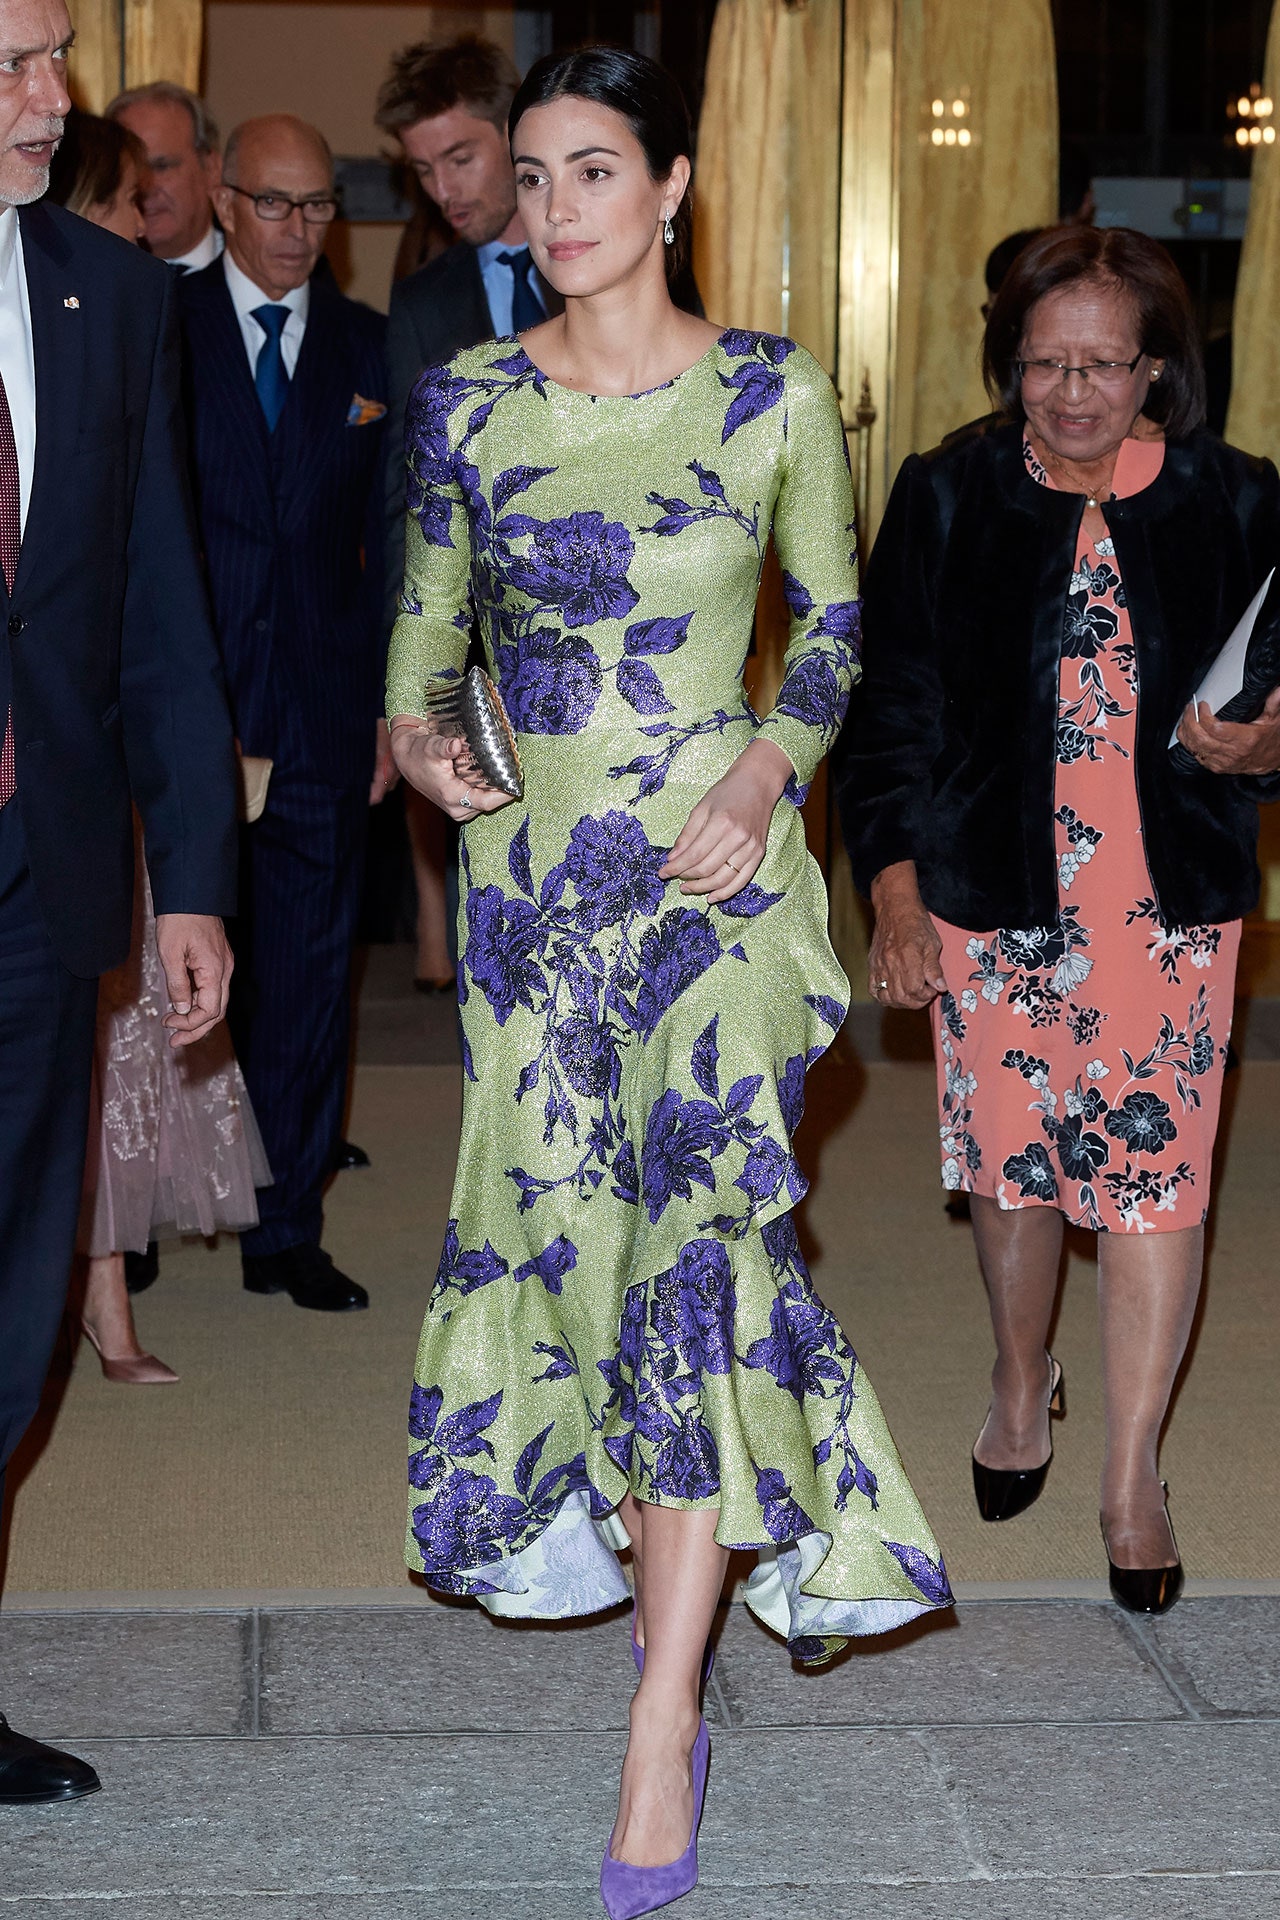 El Pardo Sarayı 2019'da Kral Felipe VI ve İspanya Kraliçesi Letizia onuruna verilen resepsiyonda